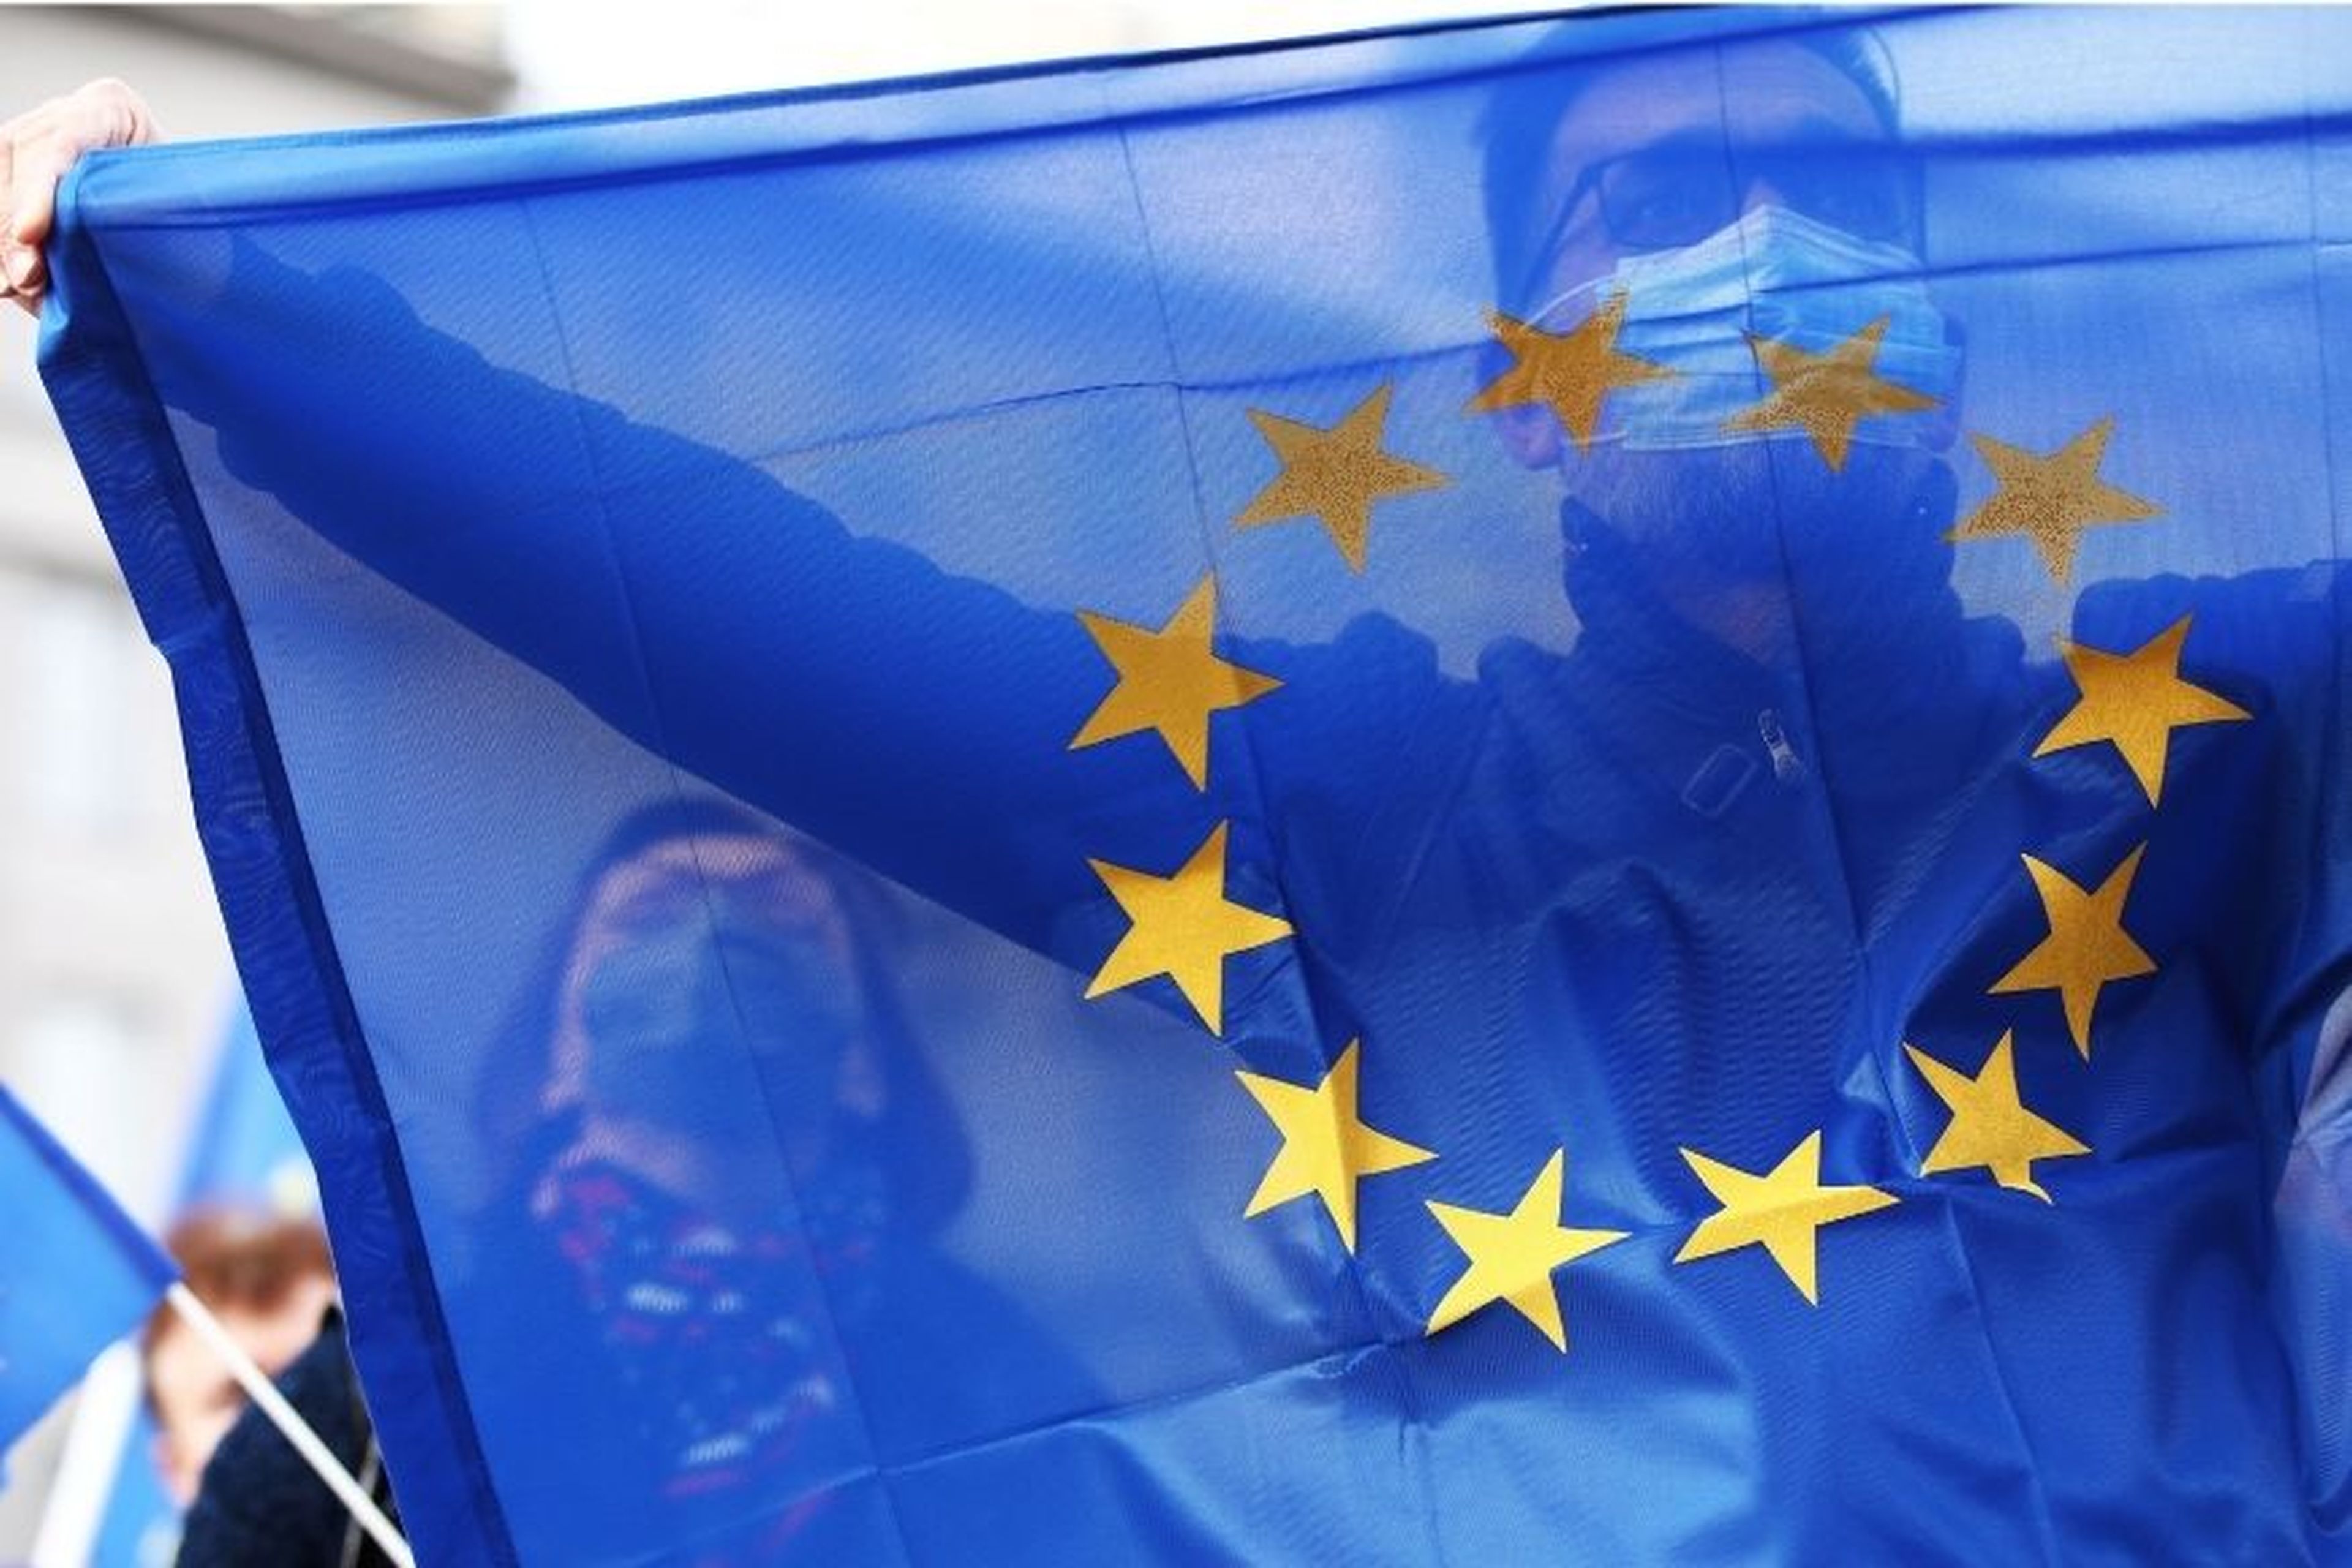 Una persona enarbola una bandera europea.